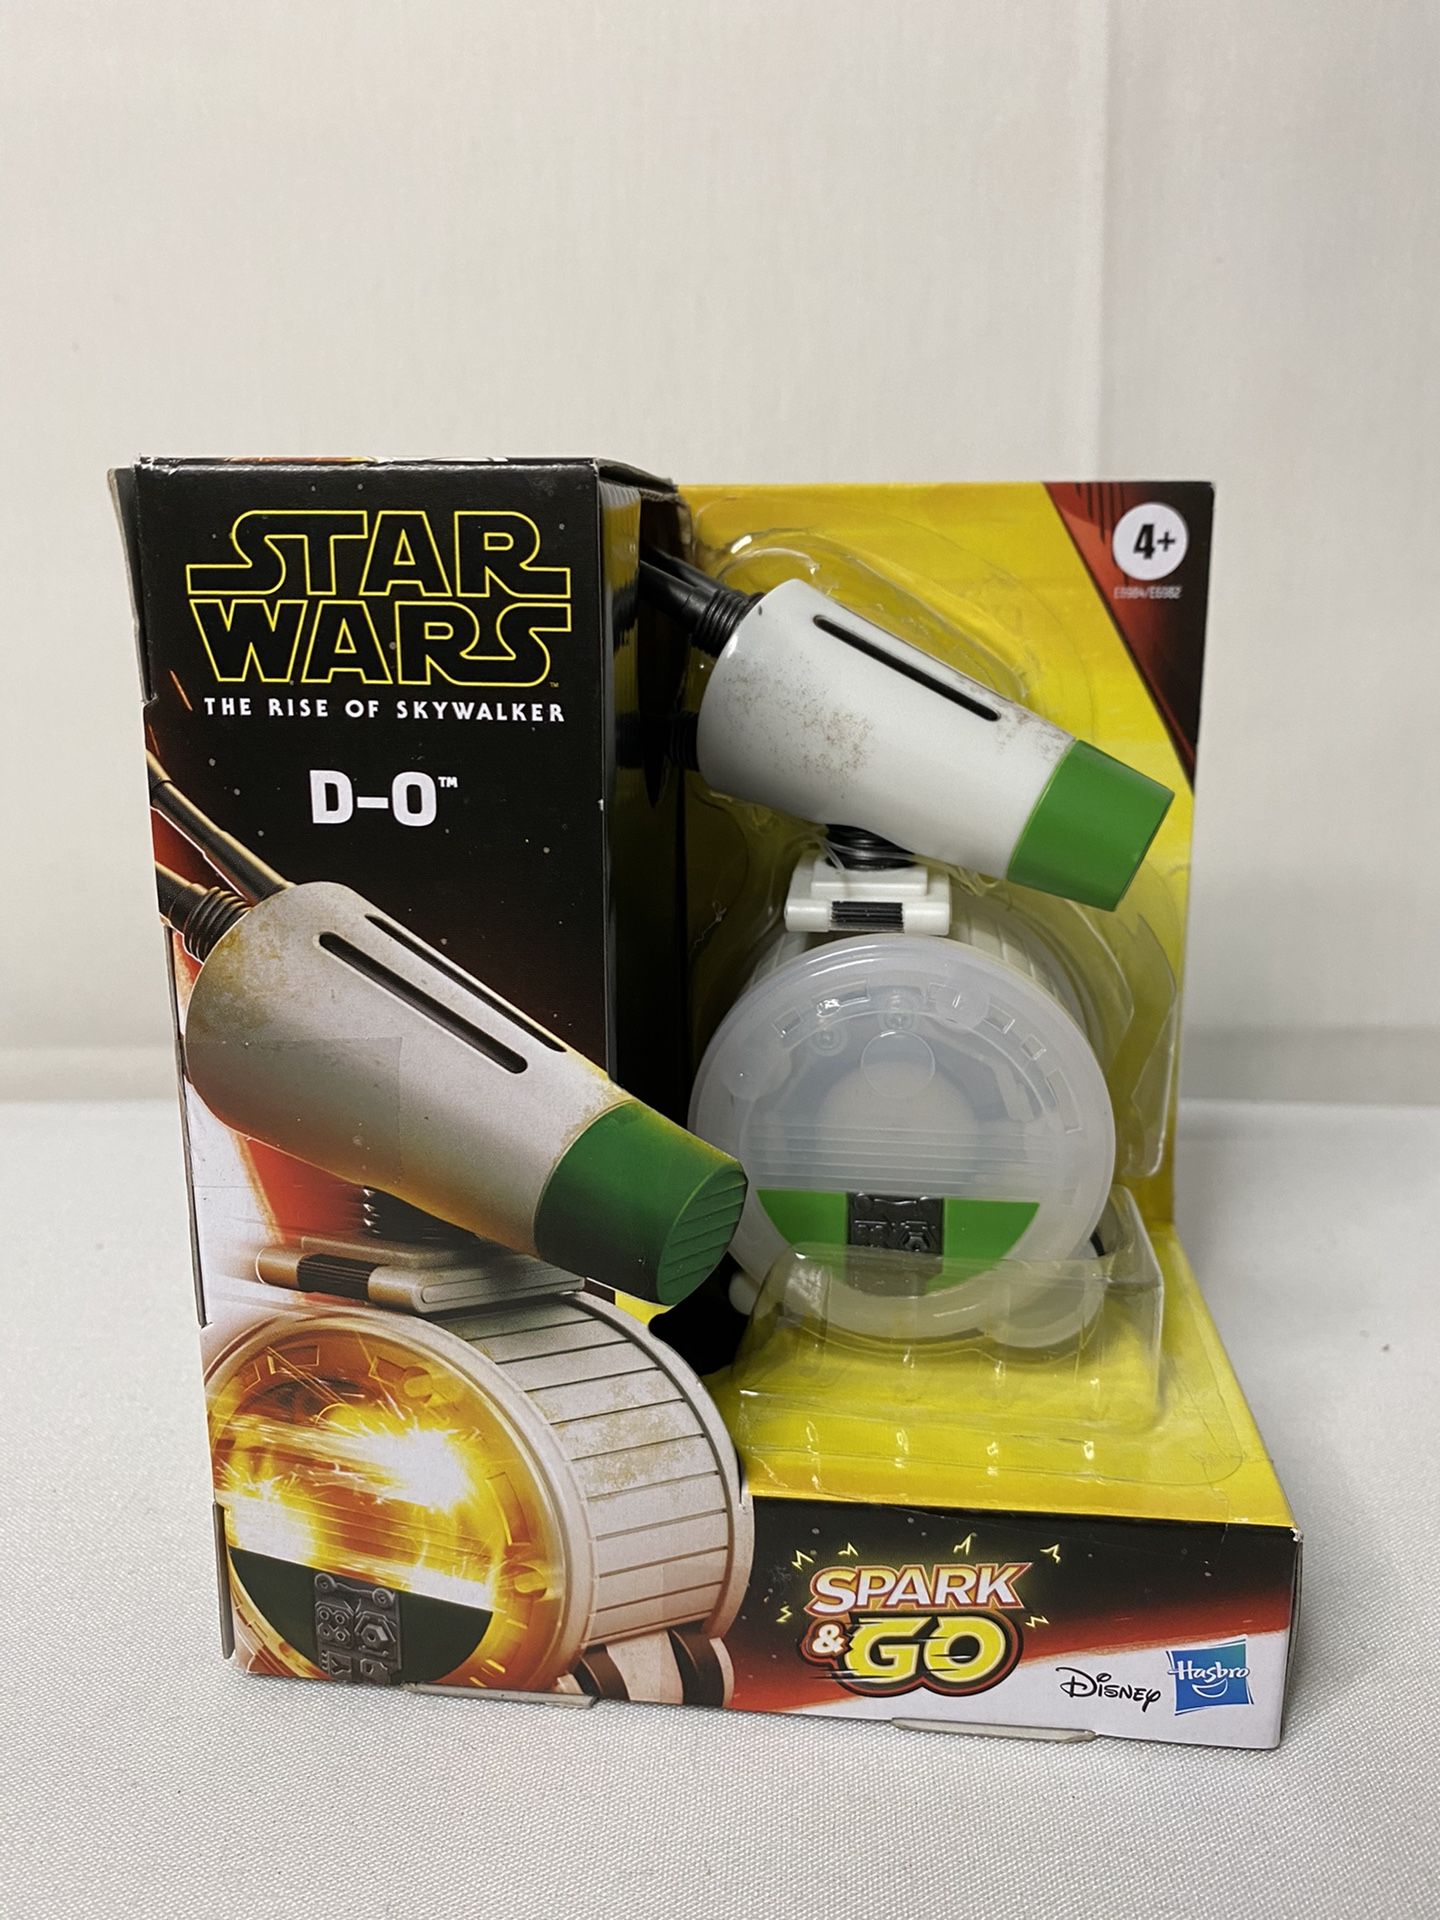 Star Wars D-O spark and go